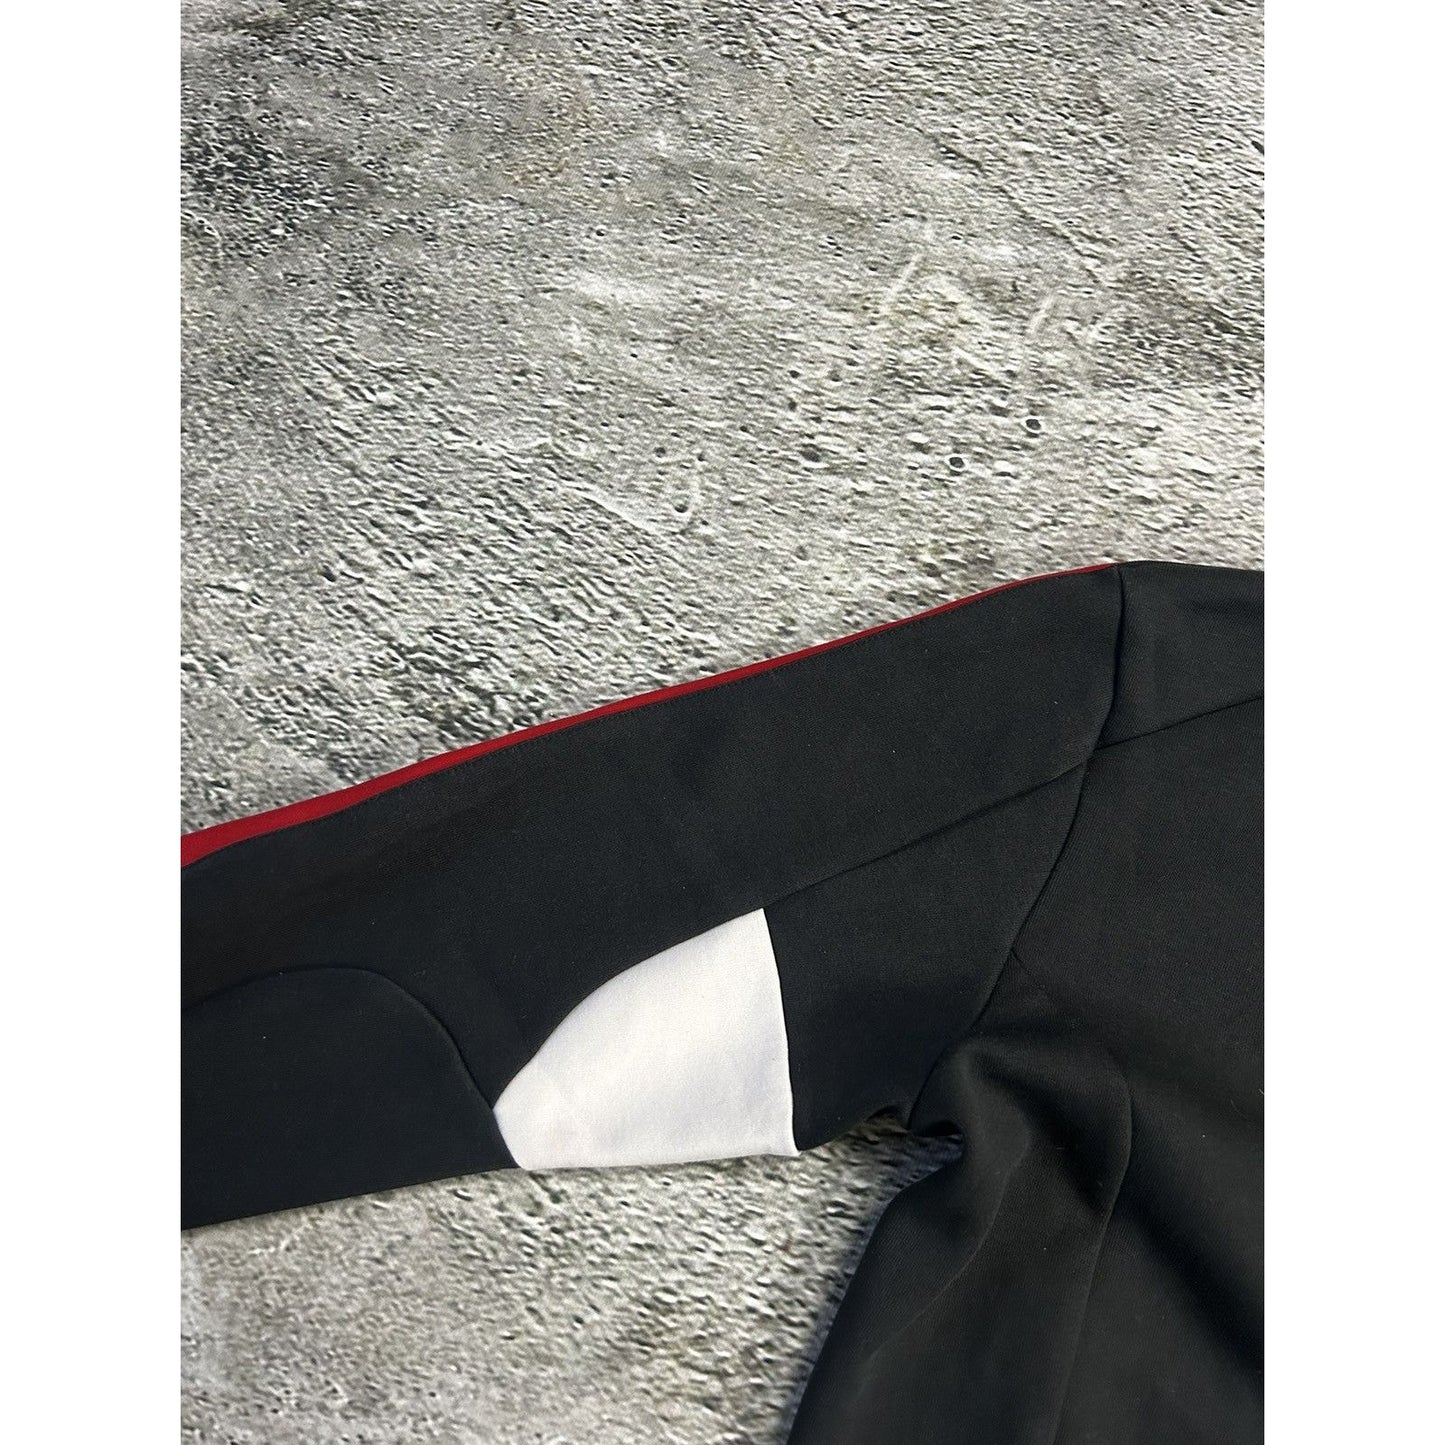 Polo Ralph Lauren zip sweatshirt black Switzerland USA